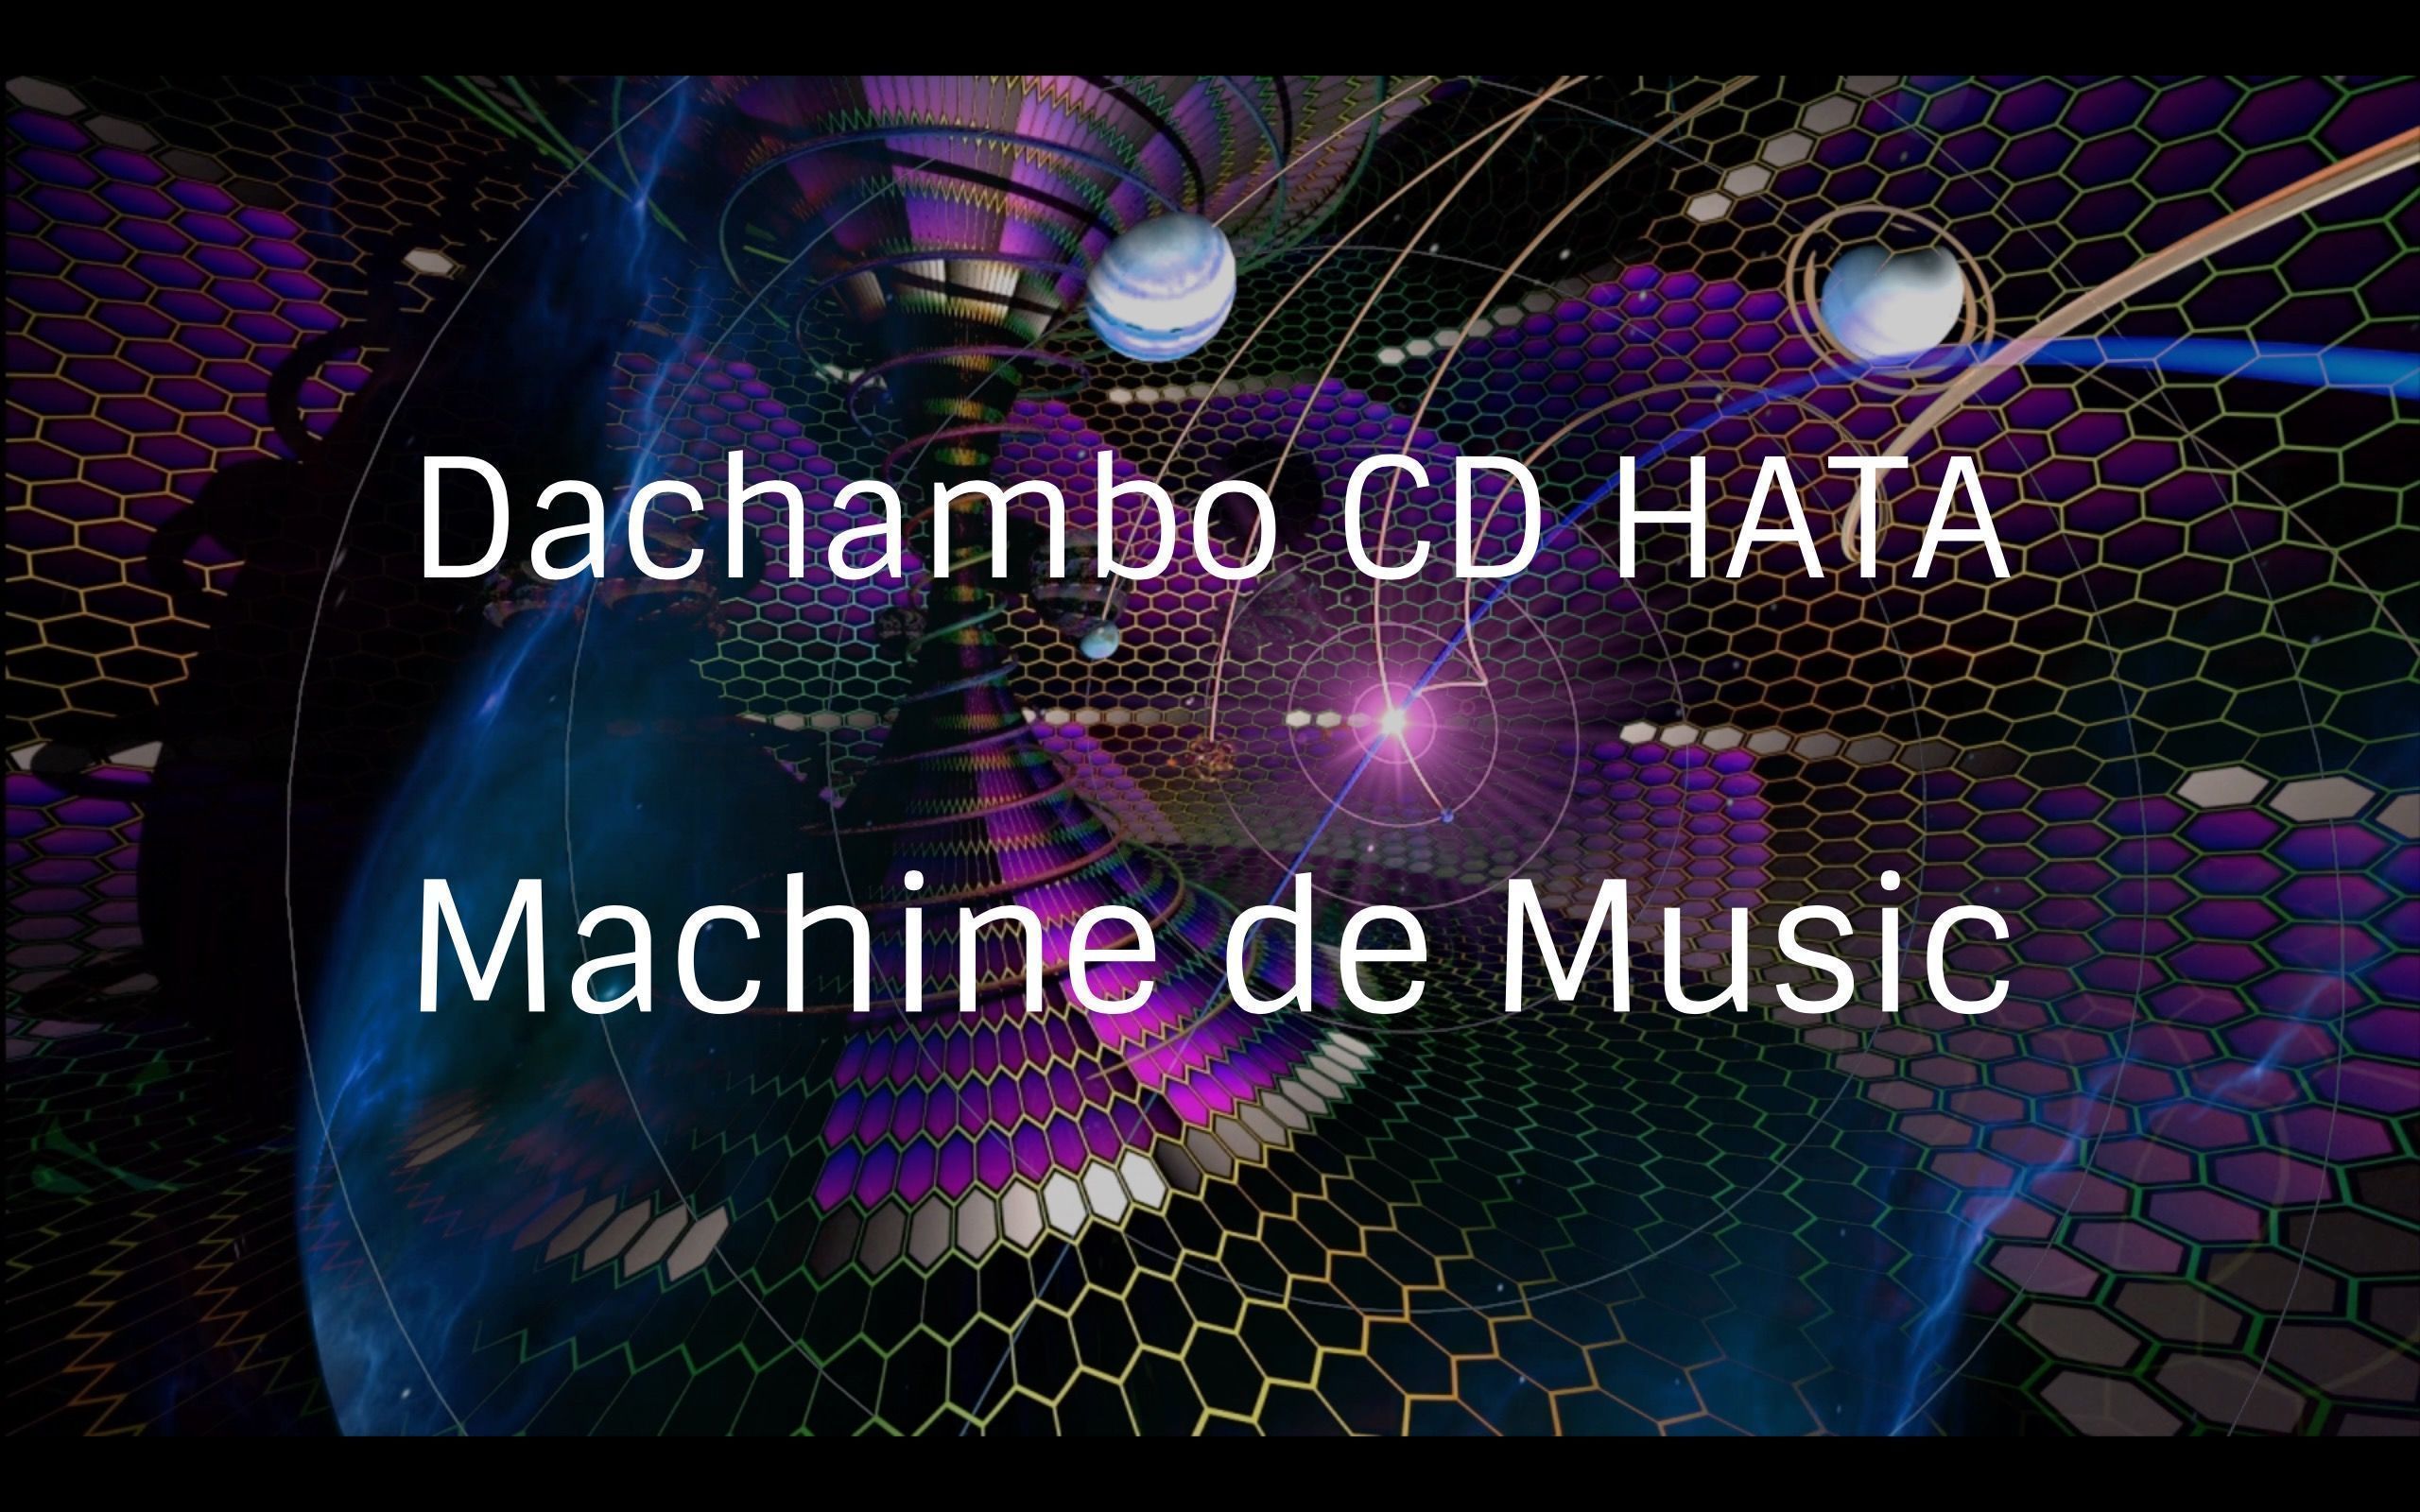 Dachambo CD HATAのMachine de Music コラムVol.70 オンラインセッションの現在と未来 Ver.1